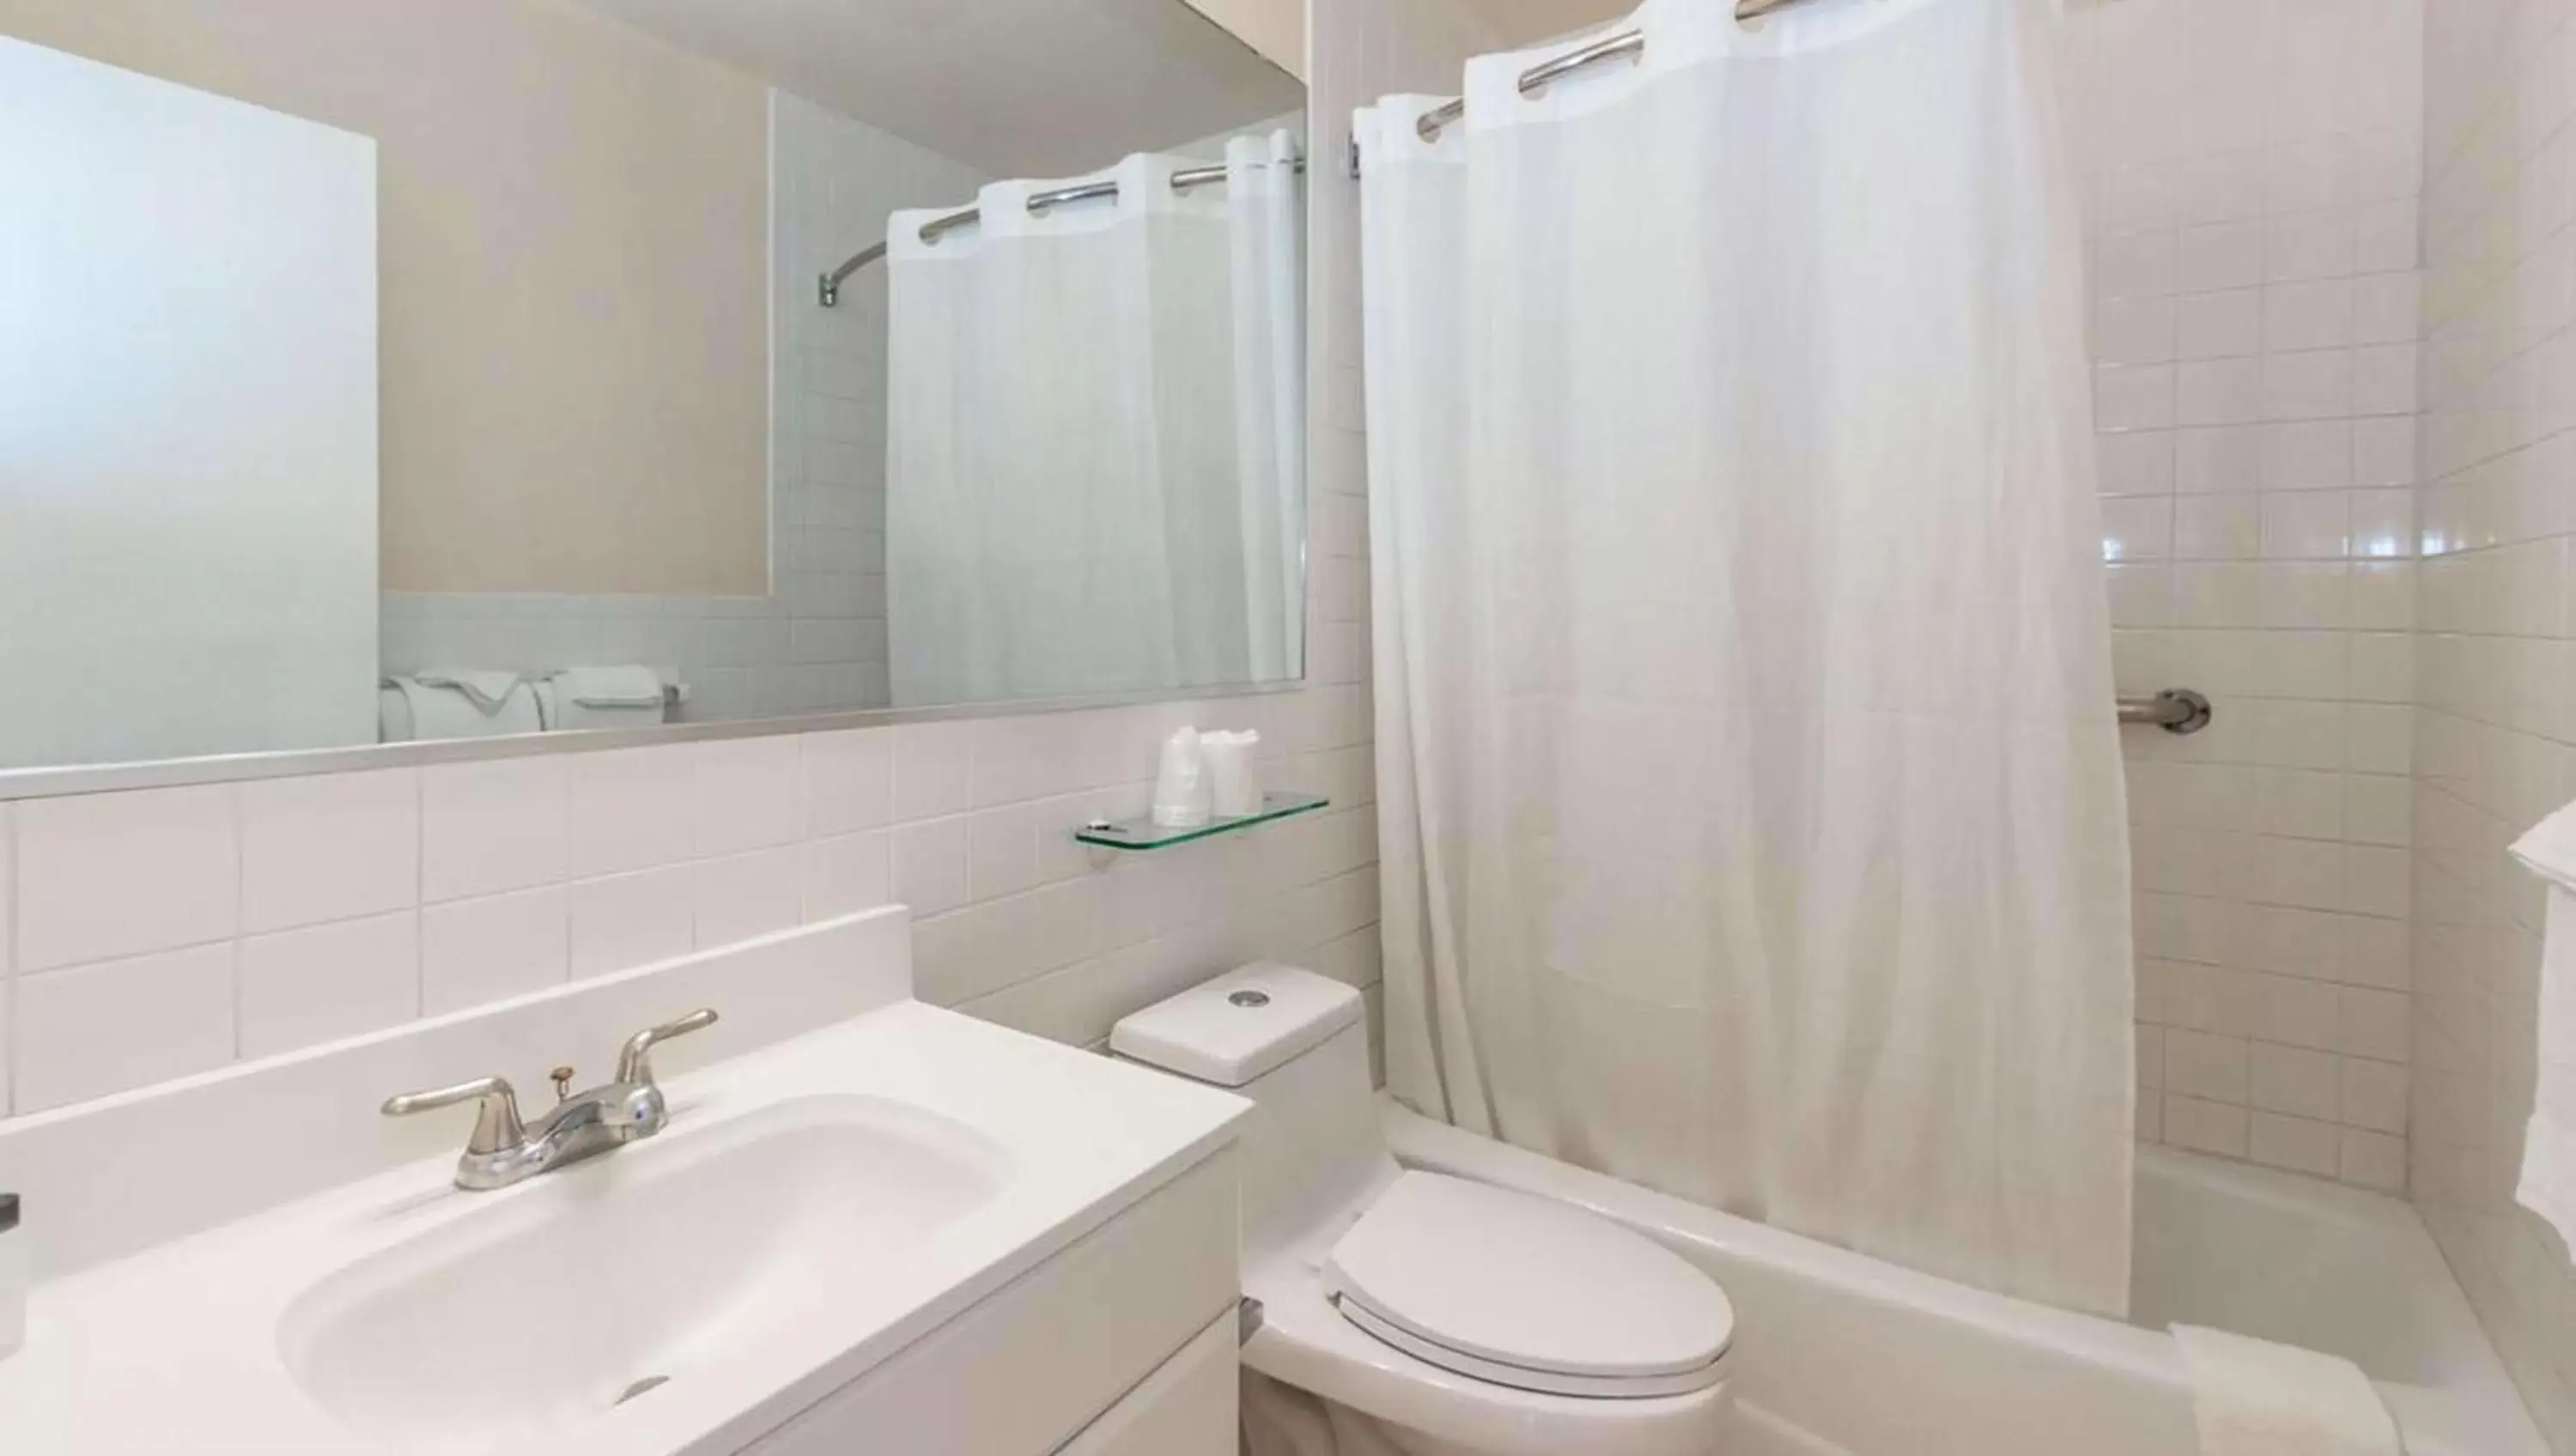 Bathroom in Belleair Beach Resort Motel